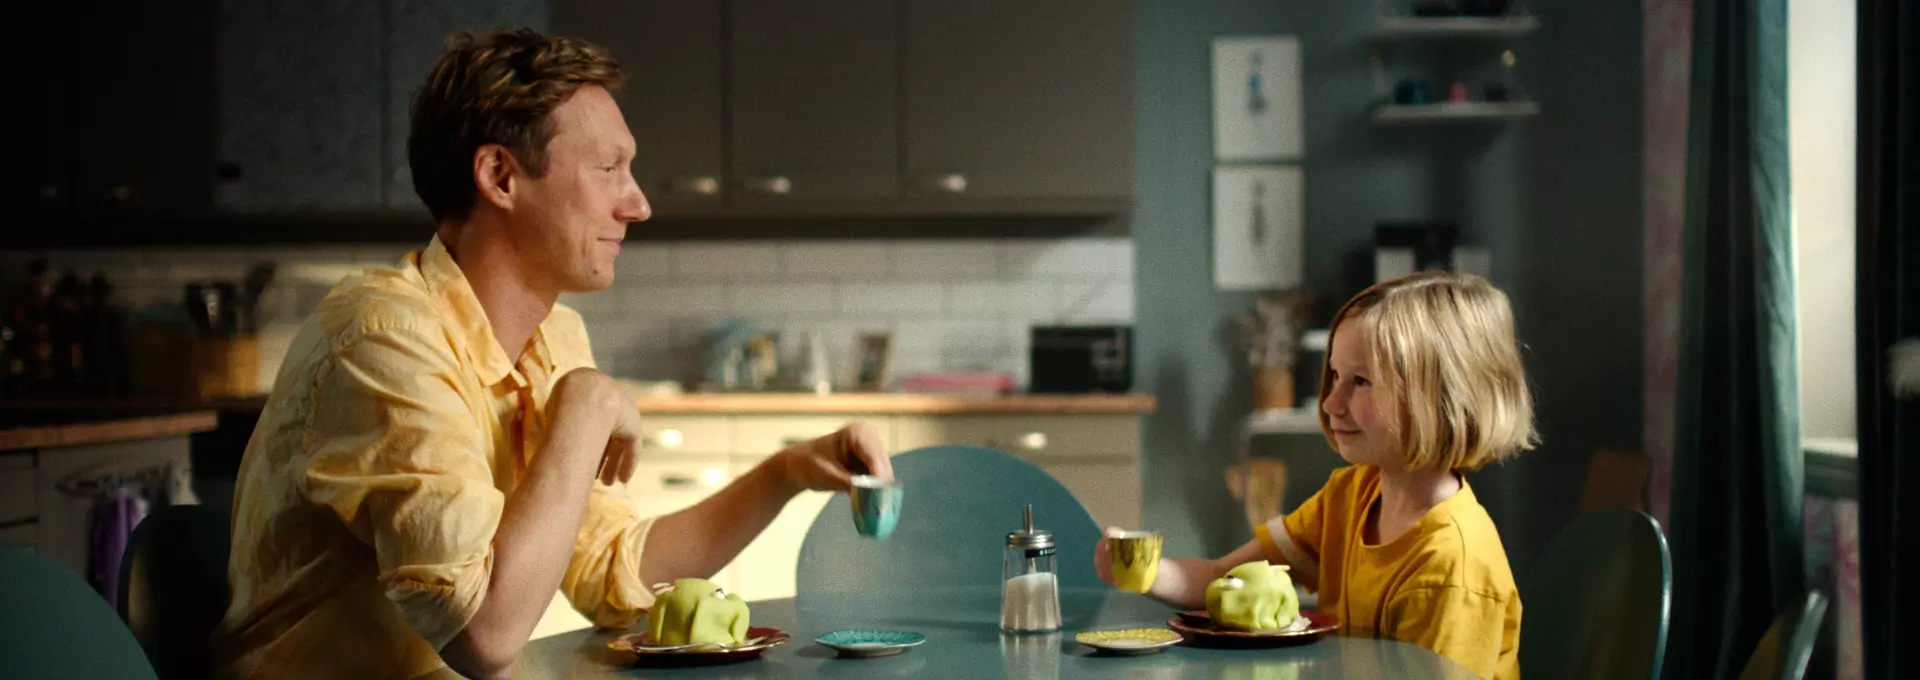 En mann og en jente sitter ved frokostbordet med kjøkkenet  bakgrunnen. Begge har på seg gult. Det ser ut som de har det gøy. 